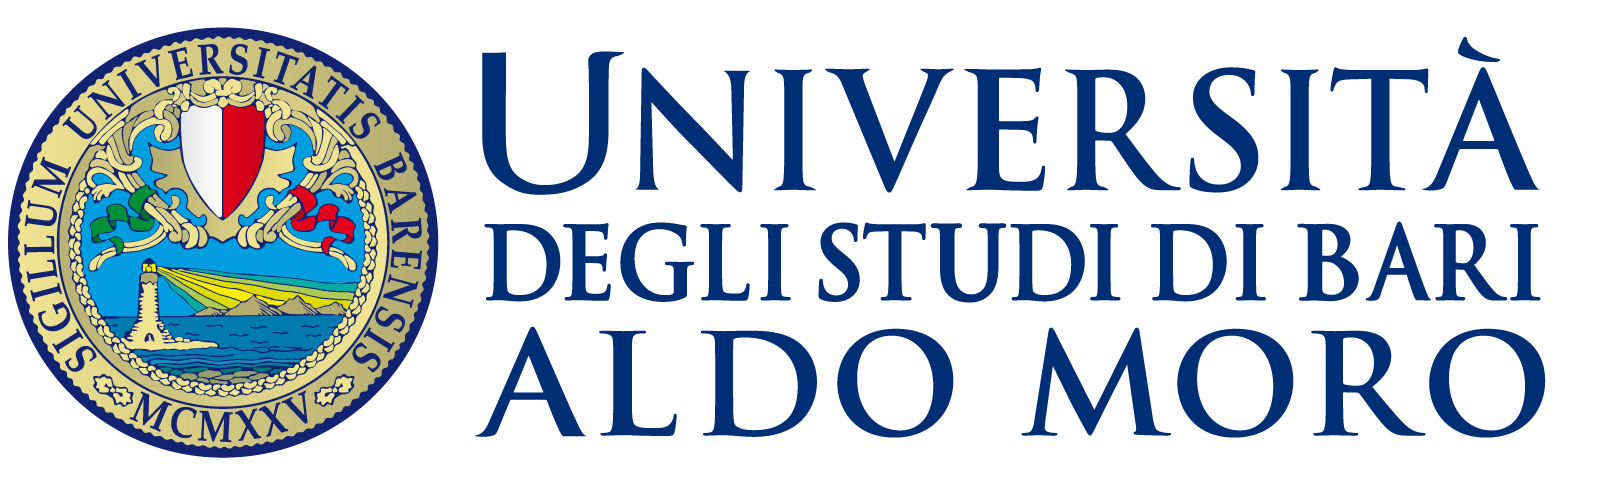 Logo Università di Bari